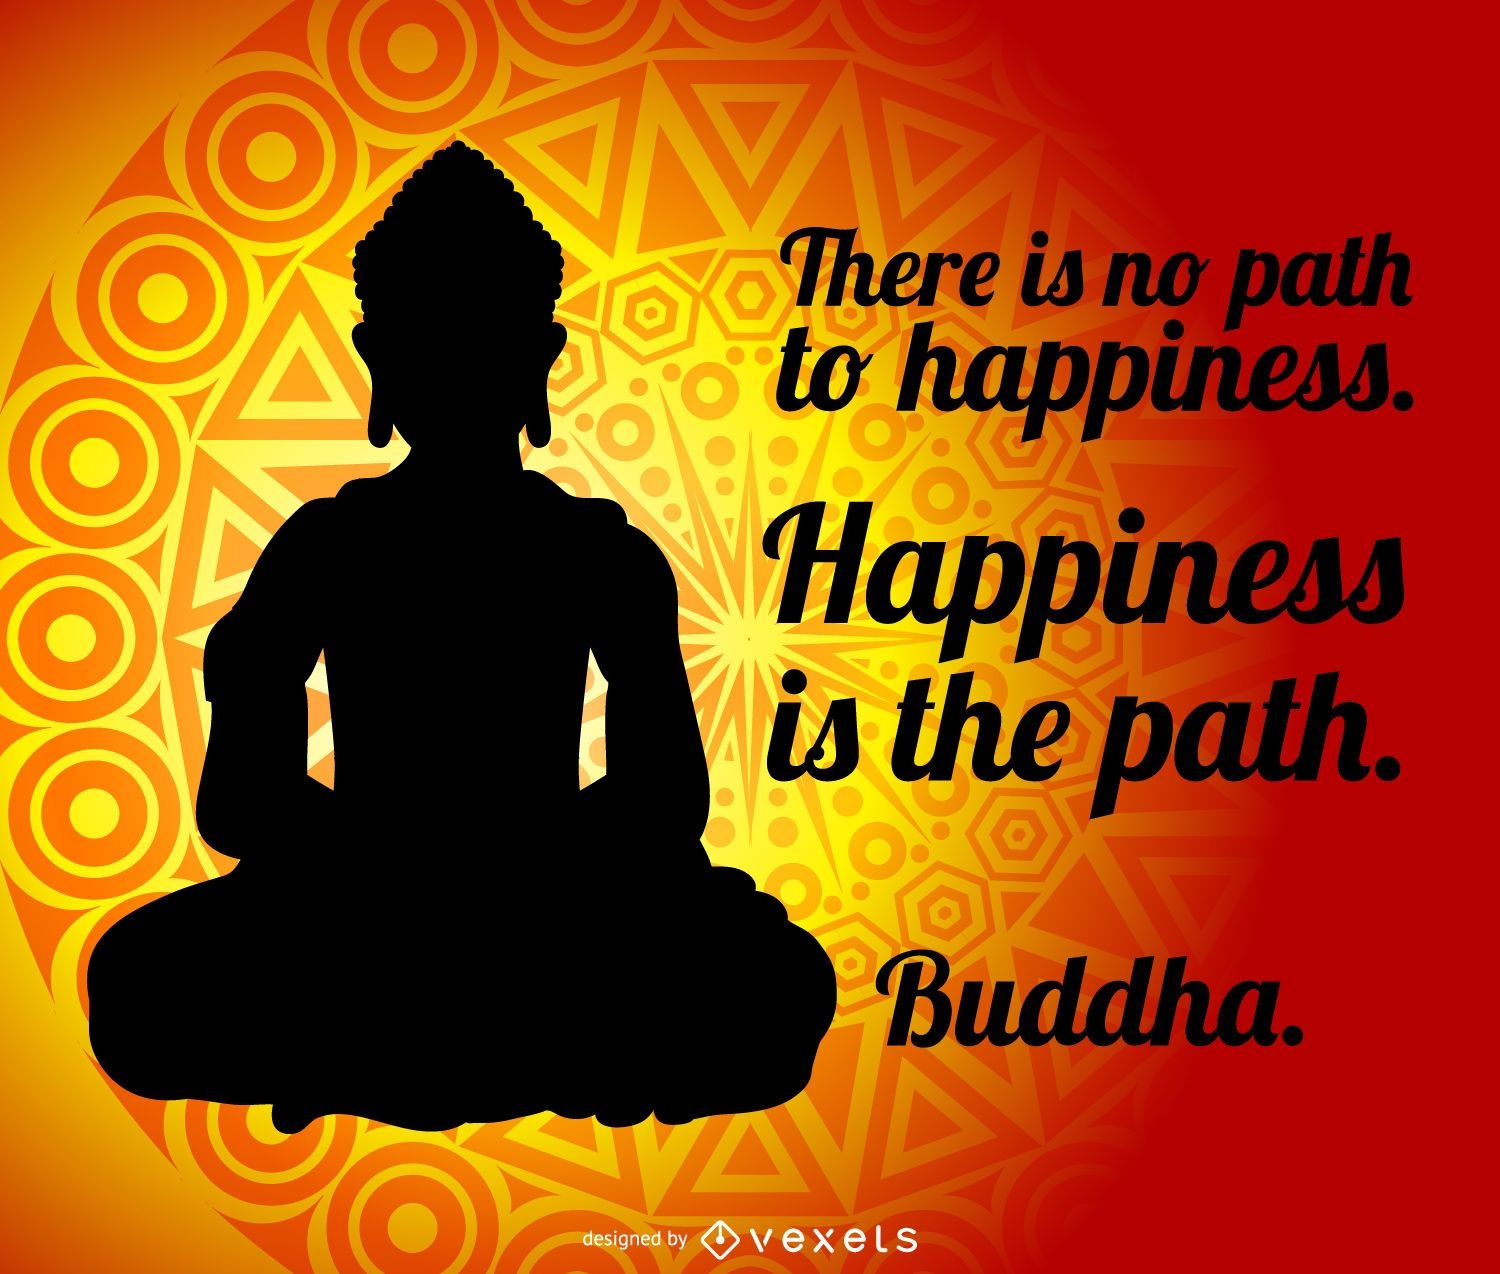 Buddha quote poster